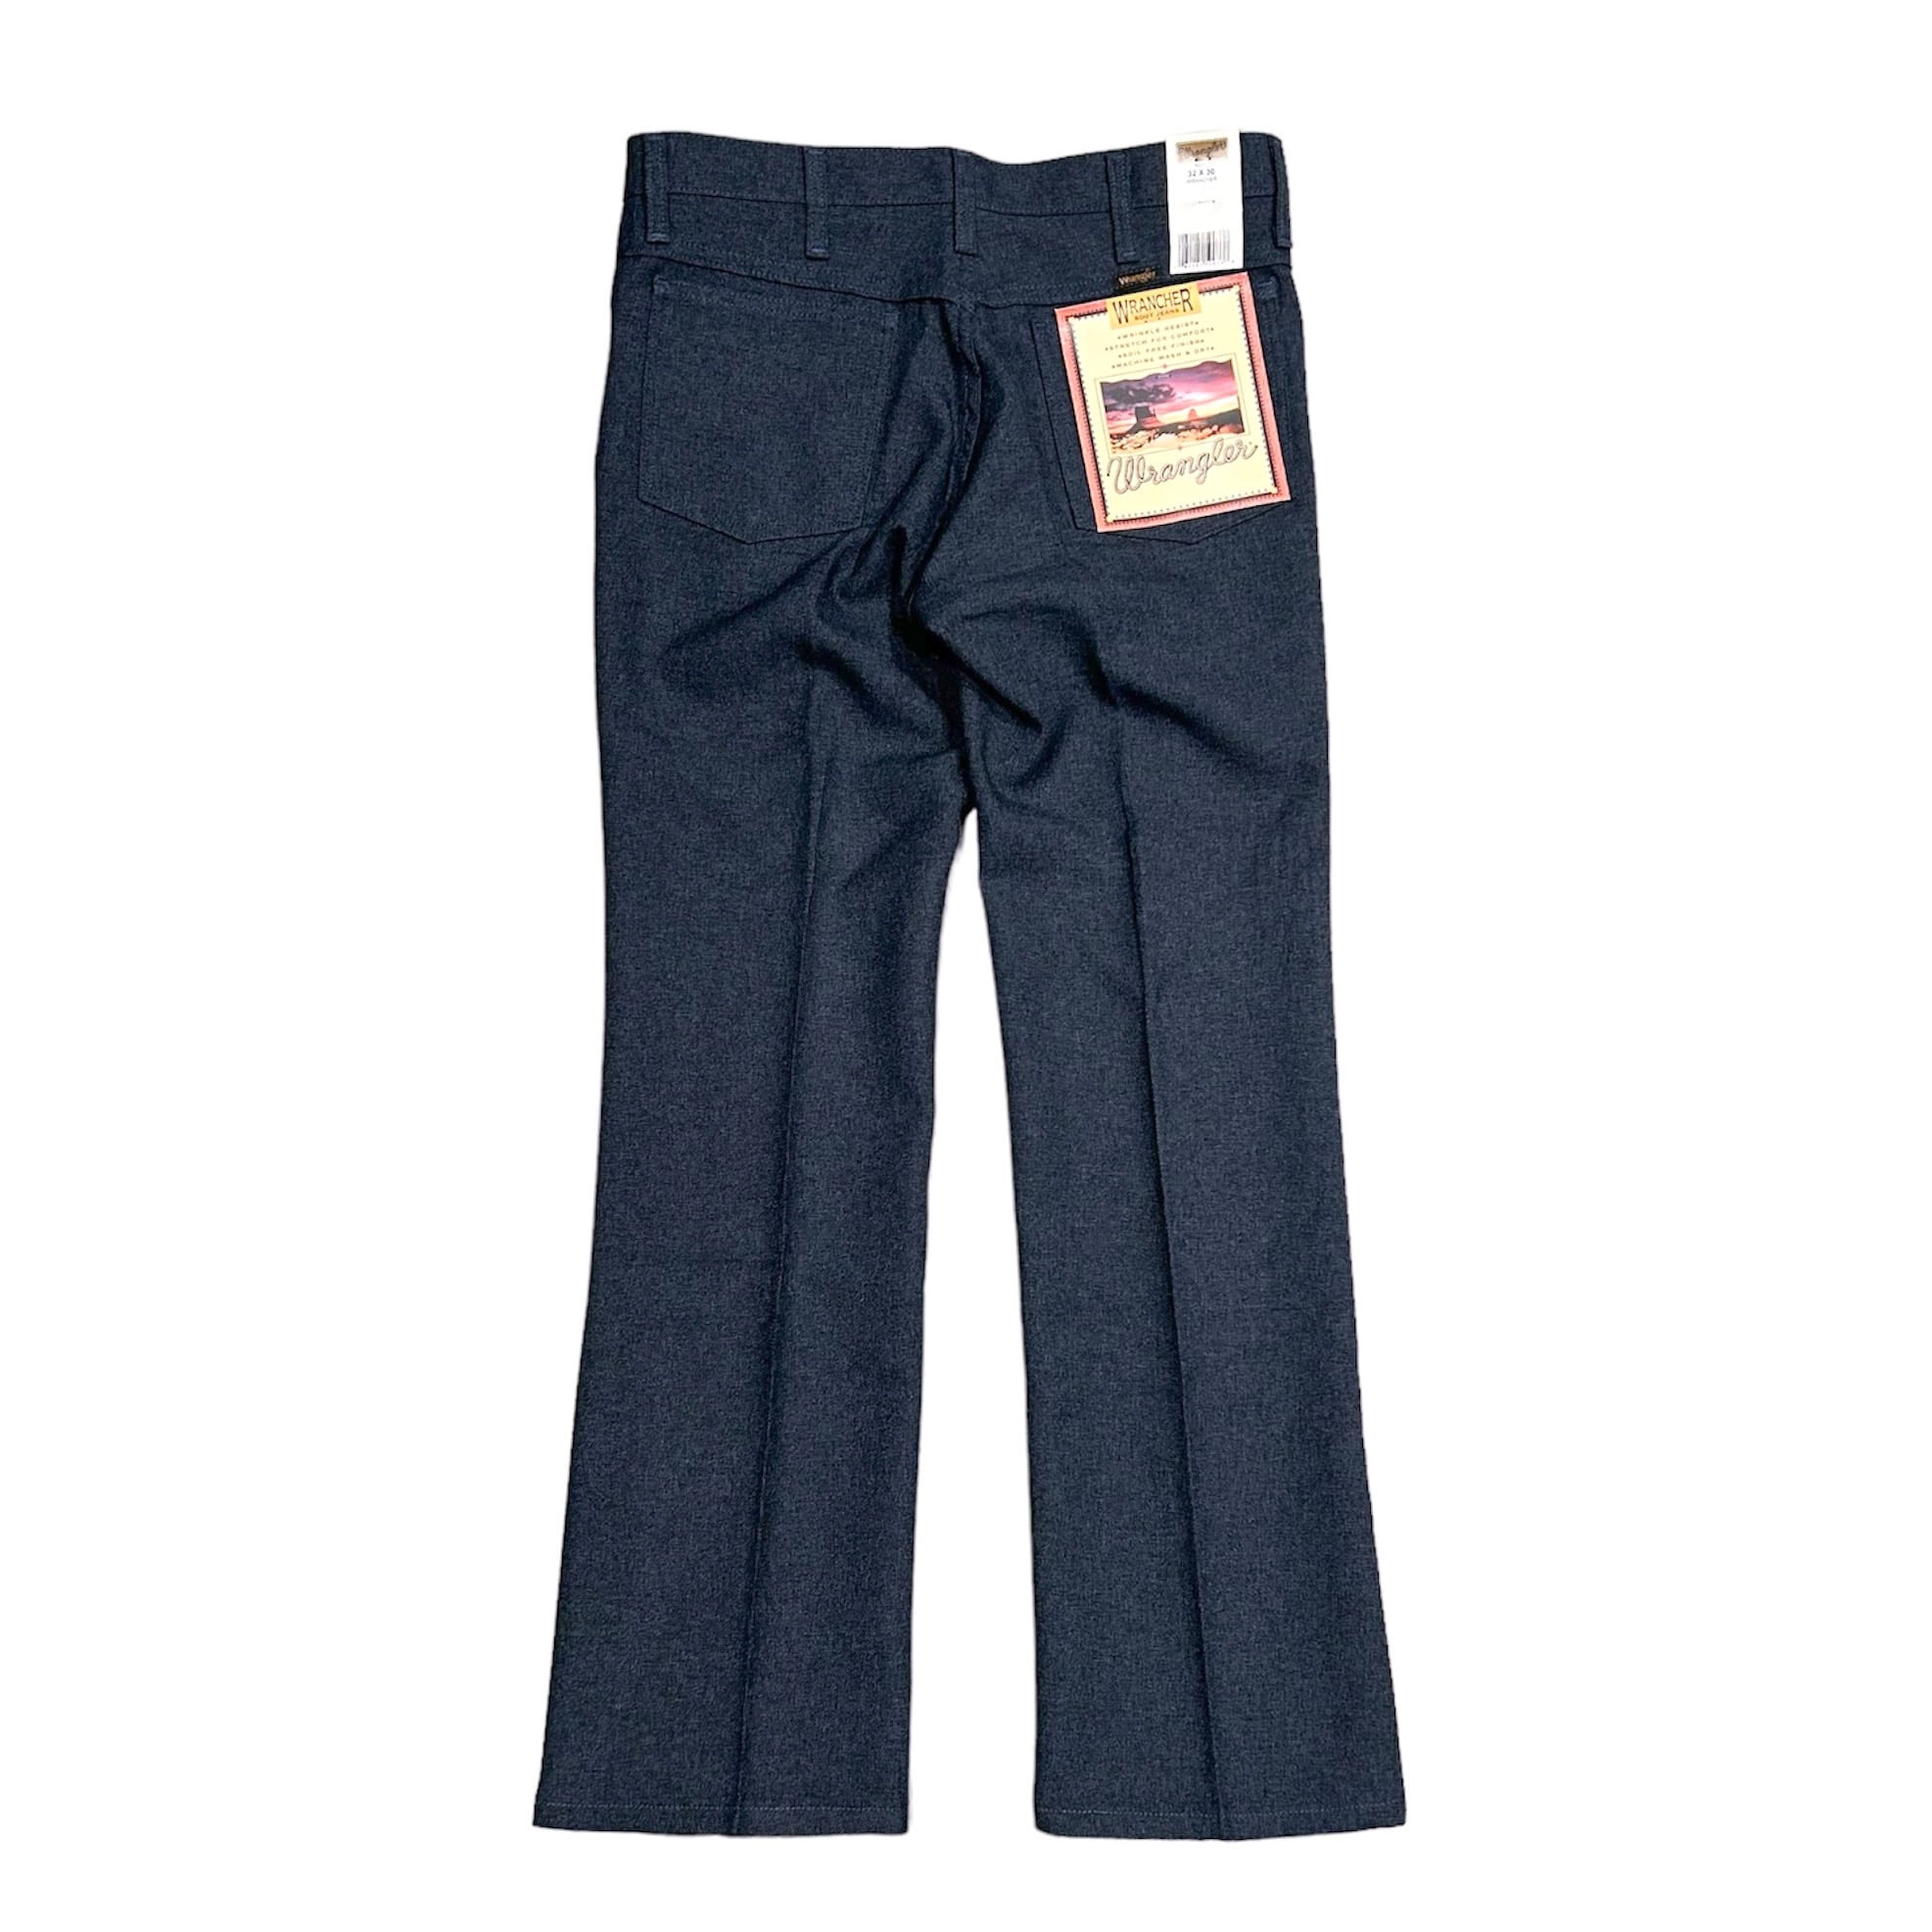 USA企画 Wrangler WRANCHER DRESS JEANS /ラングラー ランチャー ドレスジーンズ ブーツカット パンツ